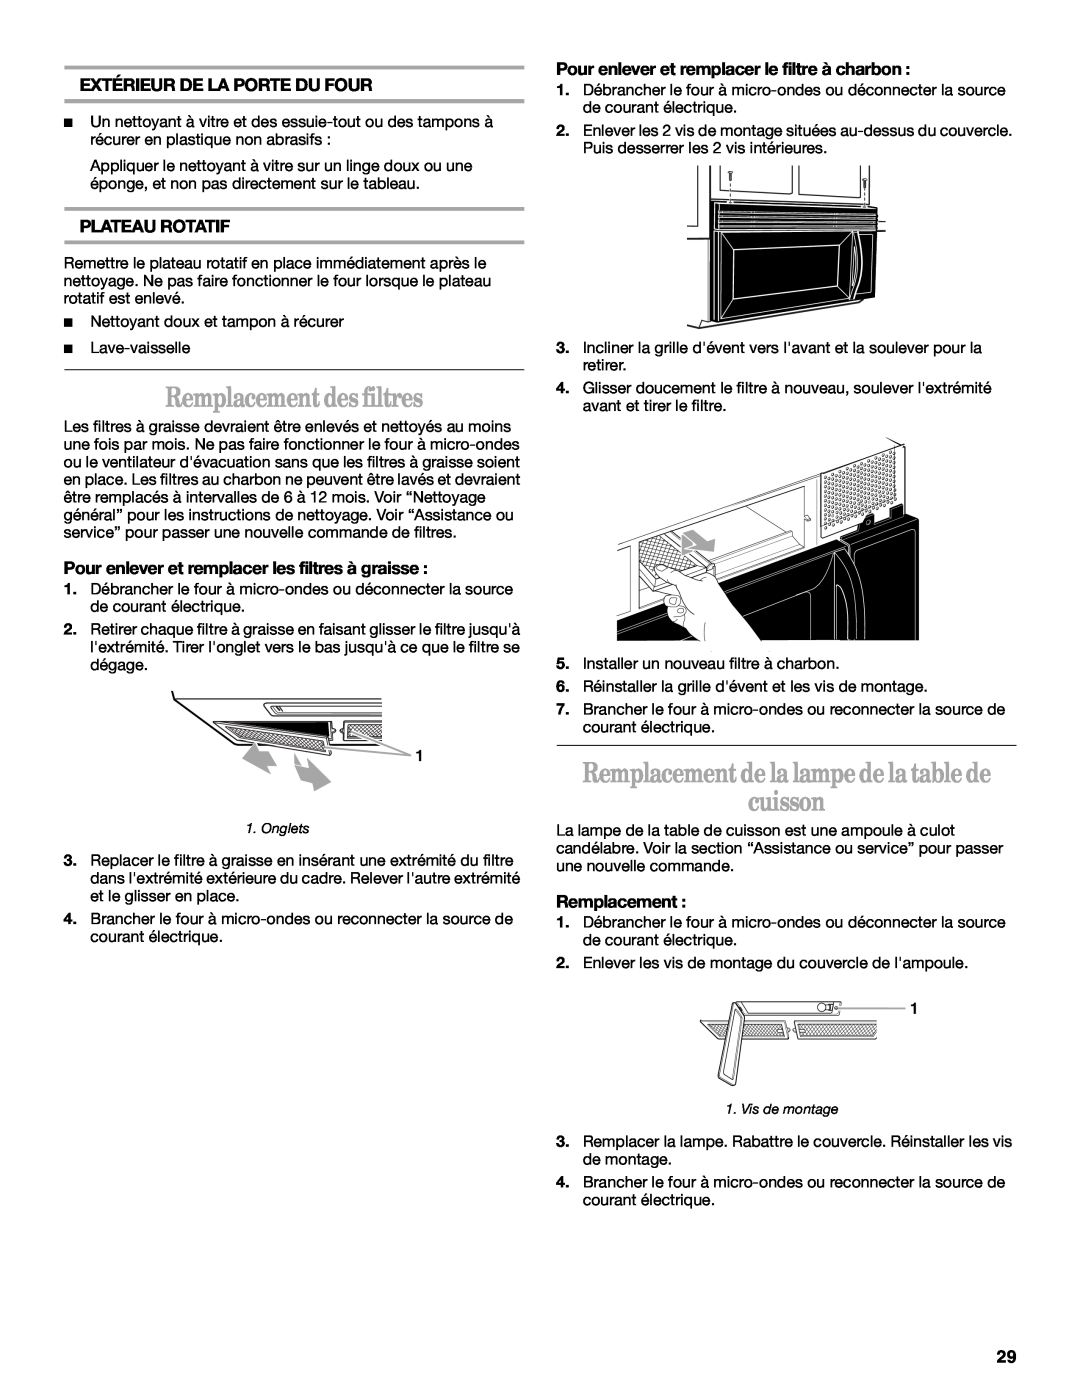 United Appliances YMH1150XM Remplacement des filtres, Remplacement de la lampe de la table de cuisson, Plateau Rotatif 